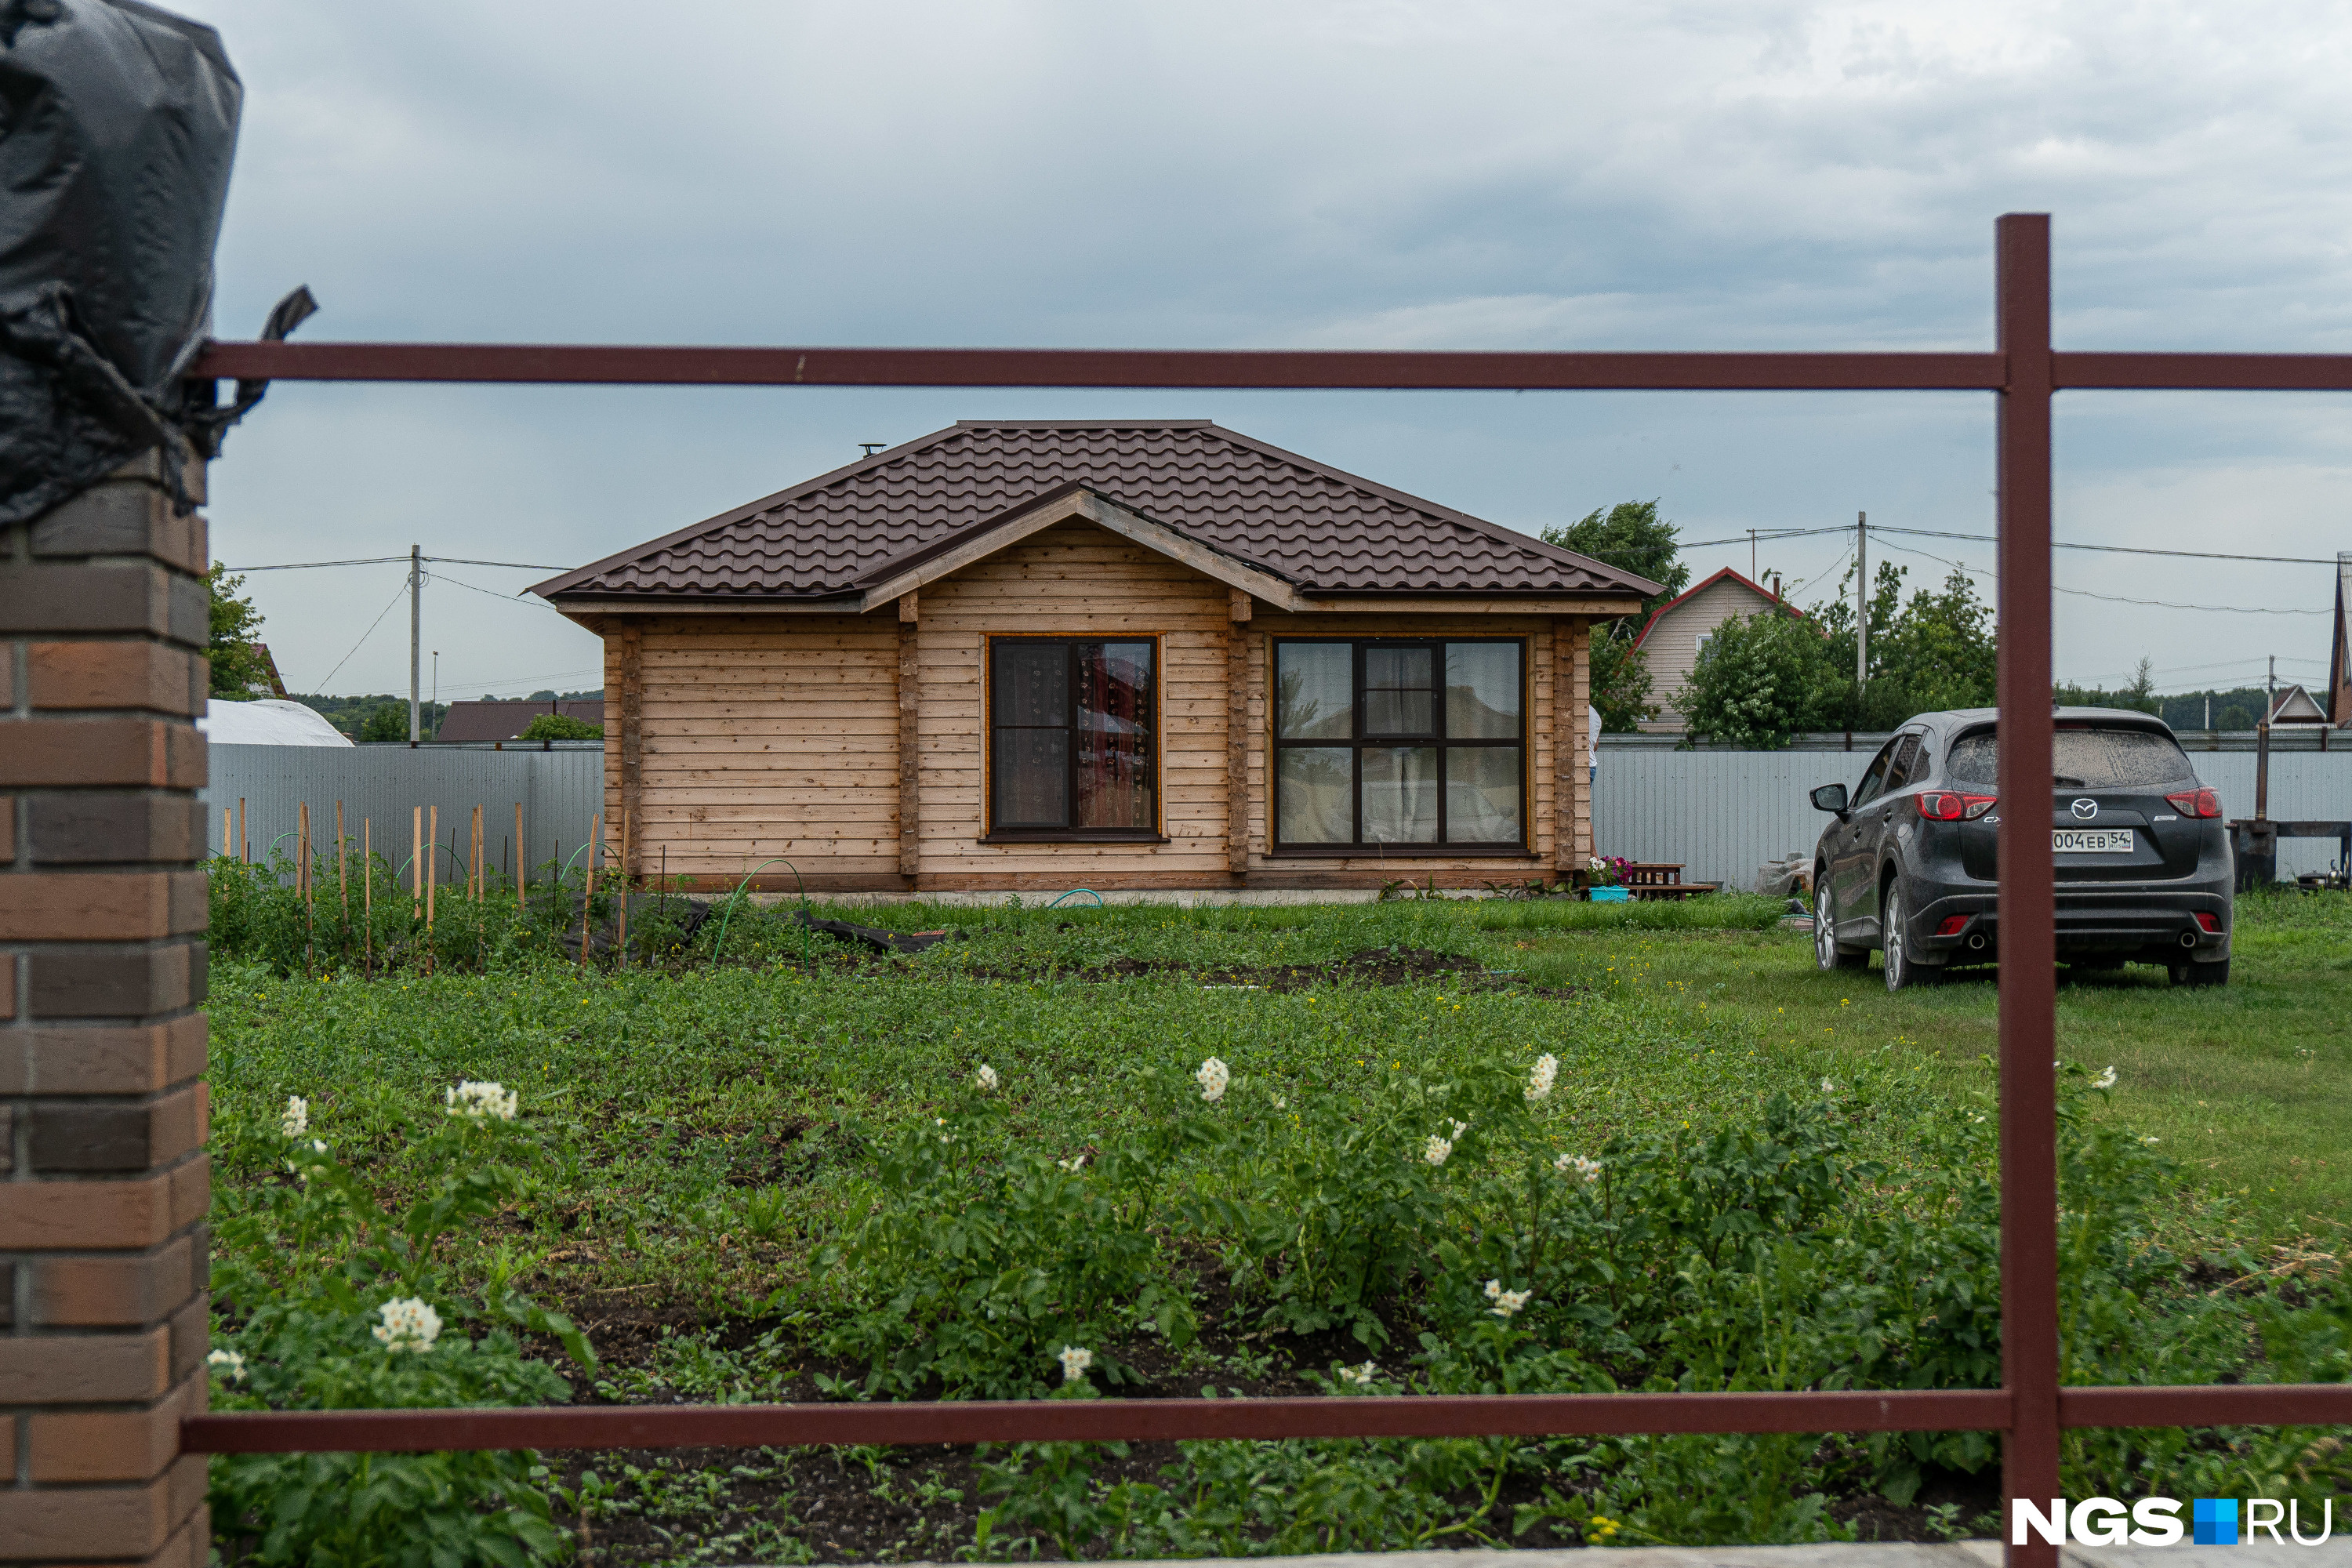 Там, где были запущенные поля Новосибирской зональной станции садоводства, теперь один за одним растут дома. Первый председатель, вспоминают местные дачники, «начал хитрить» и был осужден, но уже 10 лет в обществе живут дружно